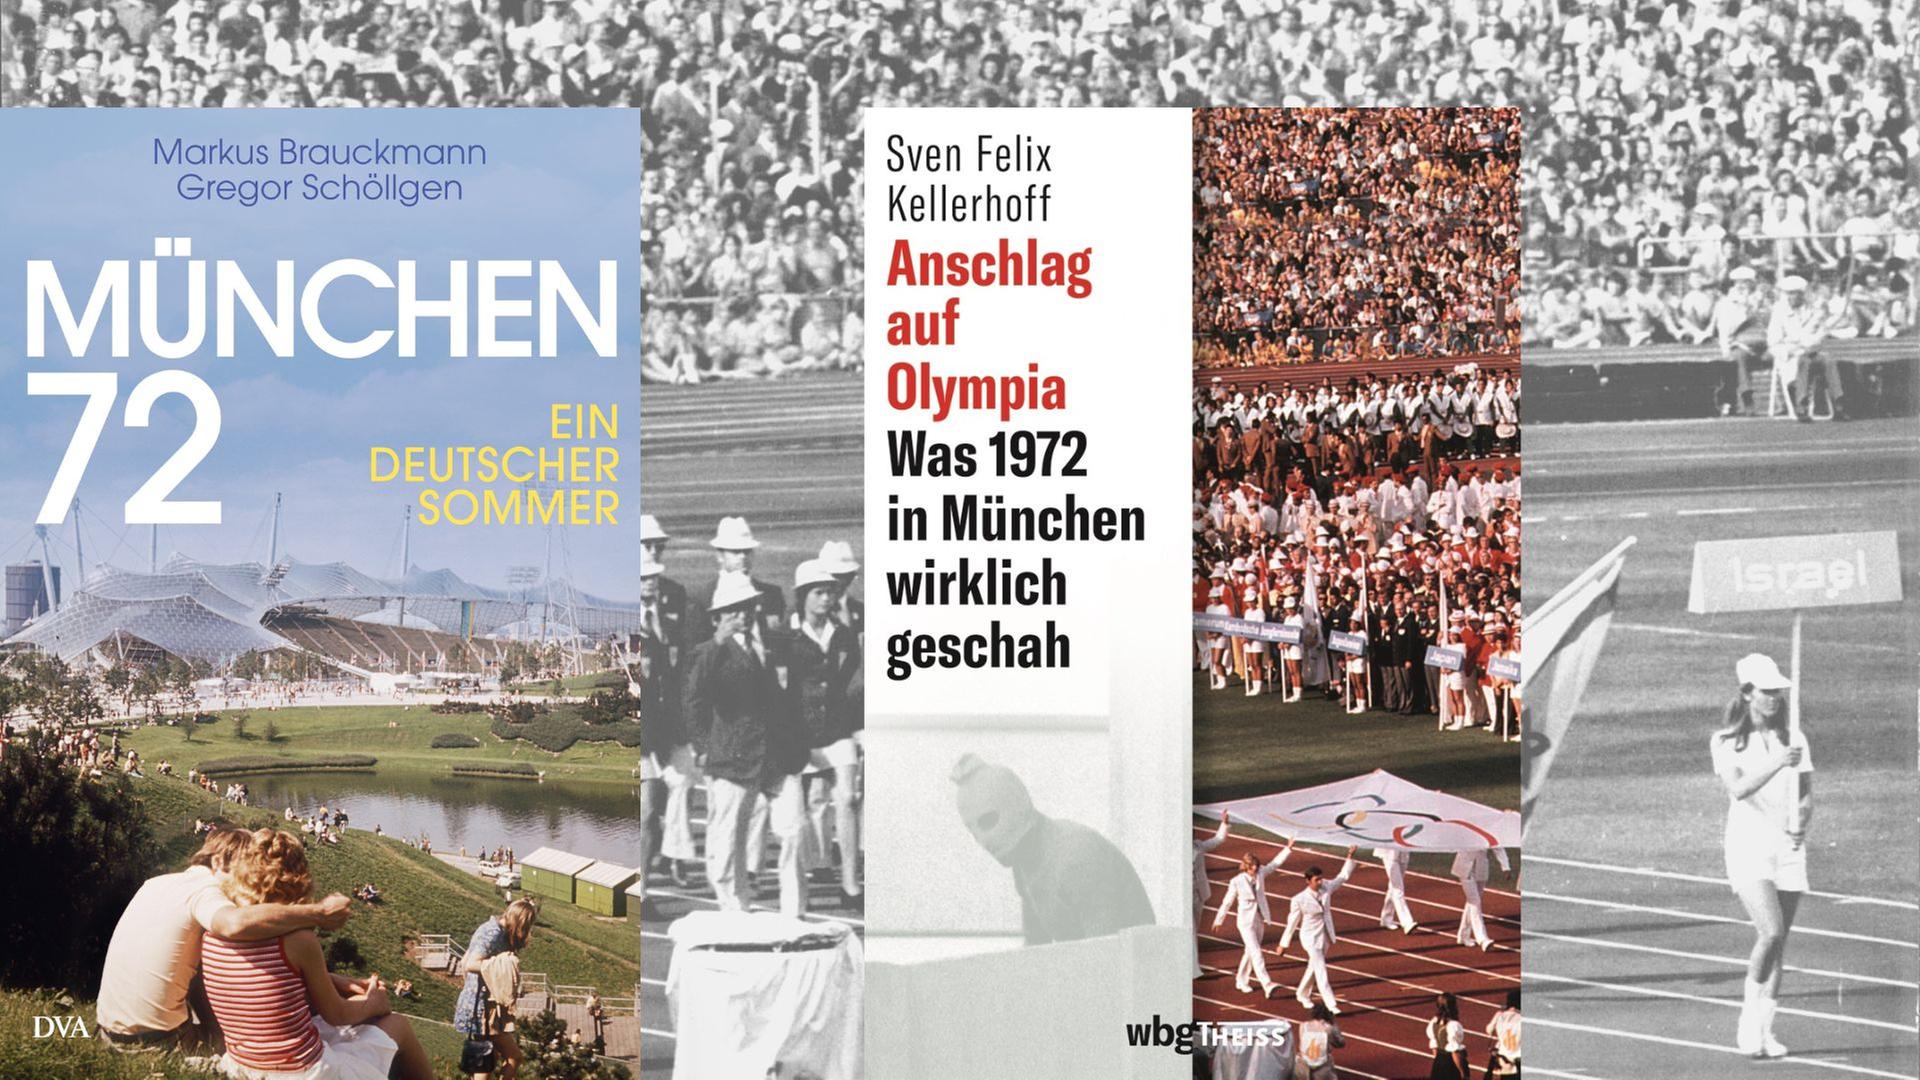 Zwei Bücher zu Olympia und München 1972 - Sven Felix Kellerhoff: "Anschlag auf Olympia. Was 1972 in München wirklich geschah" und Markus Brauckmann, Gregor Schöllgen: "München 72. Ein deutscher Sommer"